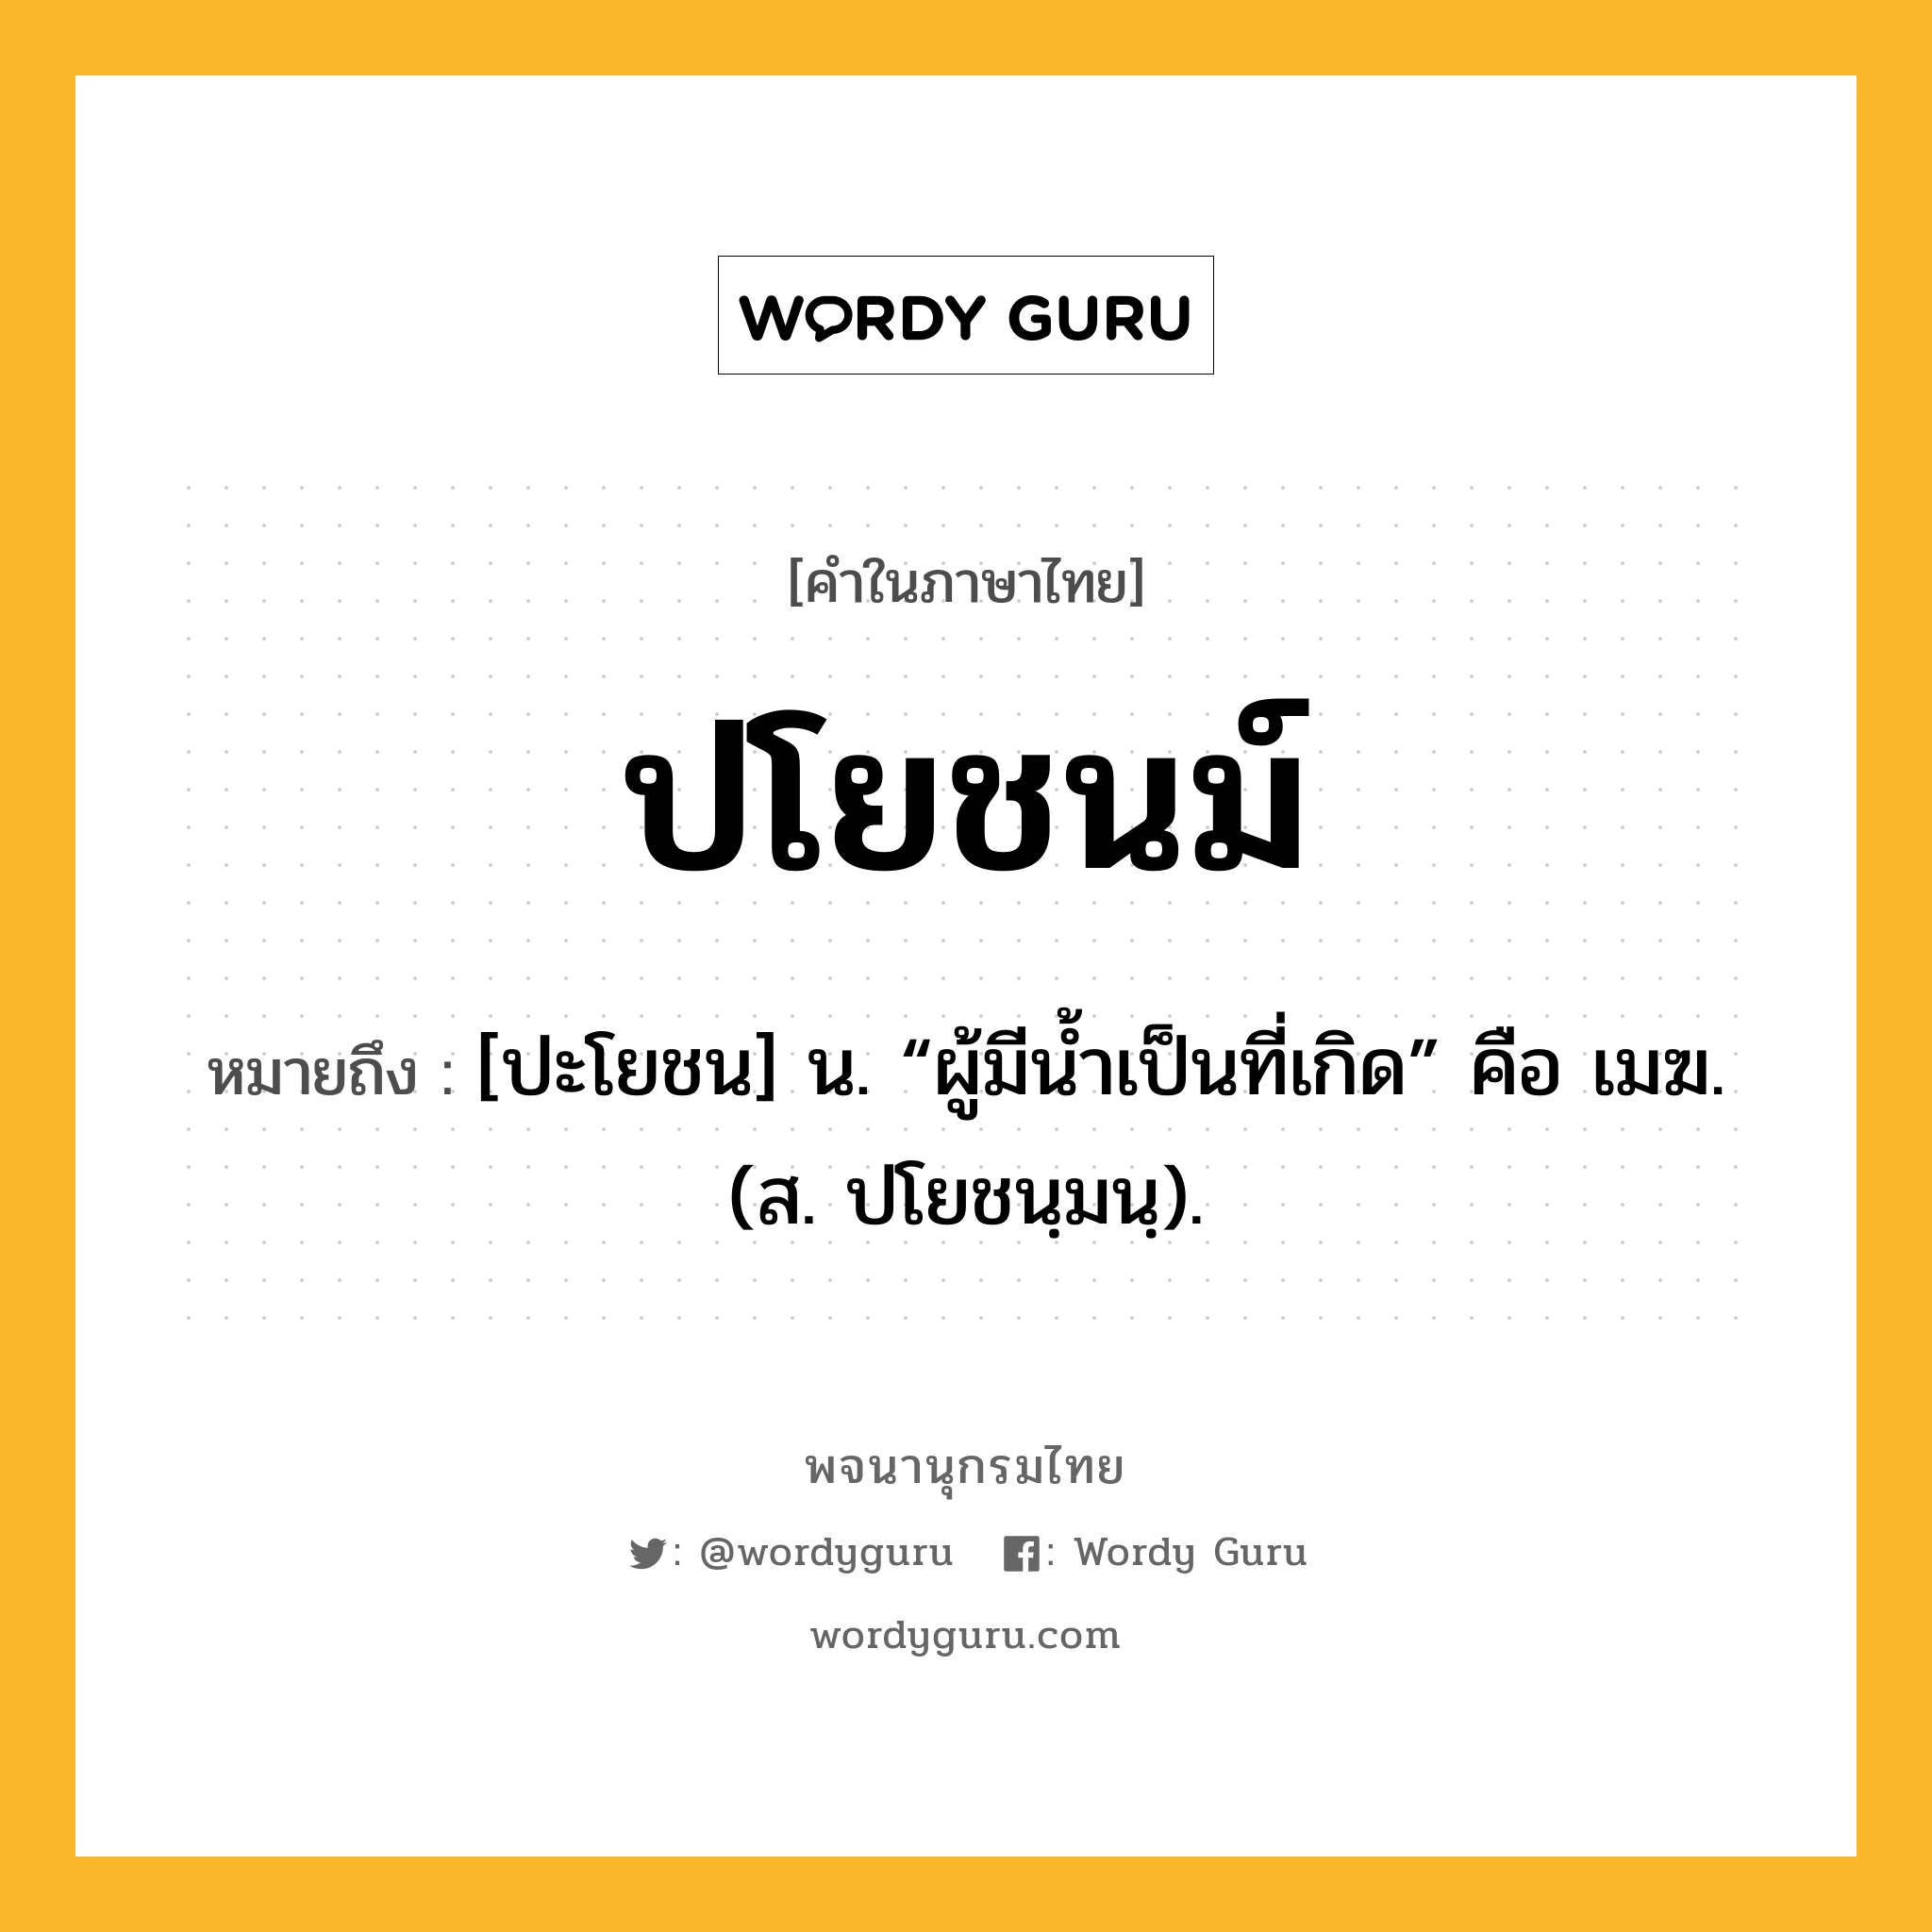 ปโยชนม์ หมายถึงอะไร?, คำในภาษาไทย ปโยชนม์ หมายถึง [ปะโยชน] น. “ผู้มีนํ้าเป็นที่เกิด” คือ เมฆ. (ส. ปโยชนฺมนฺ).